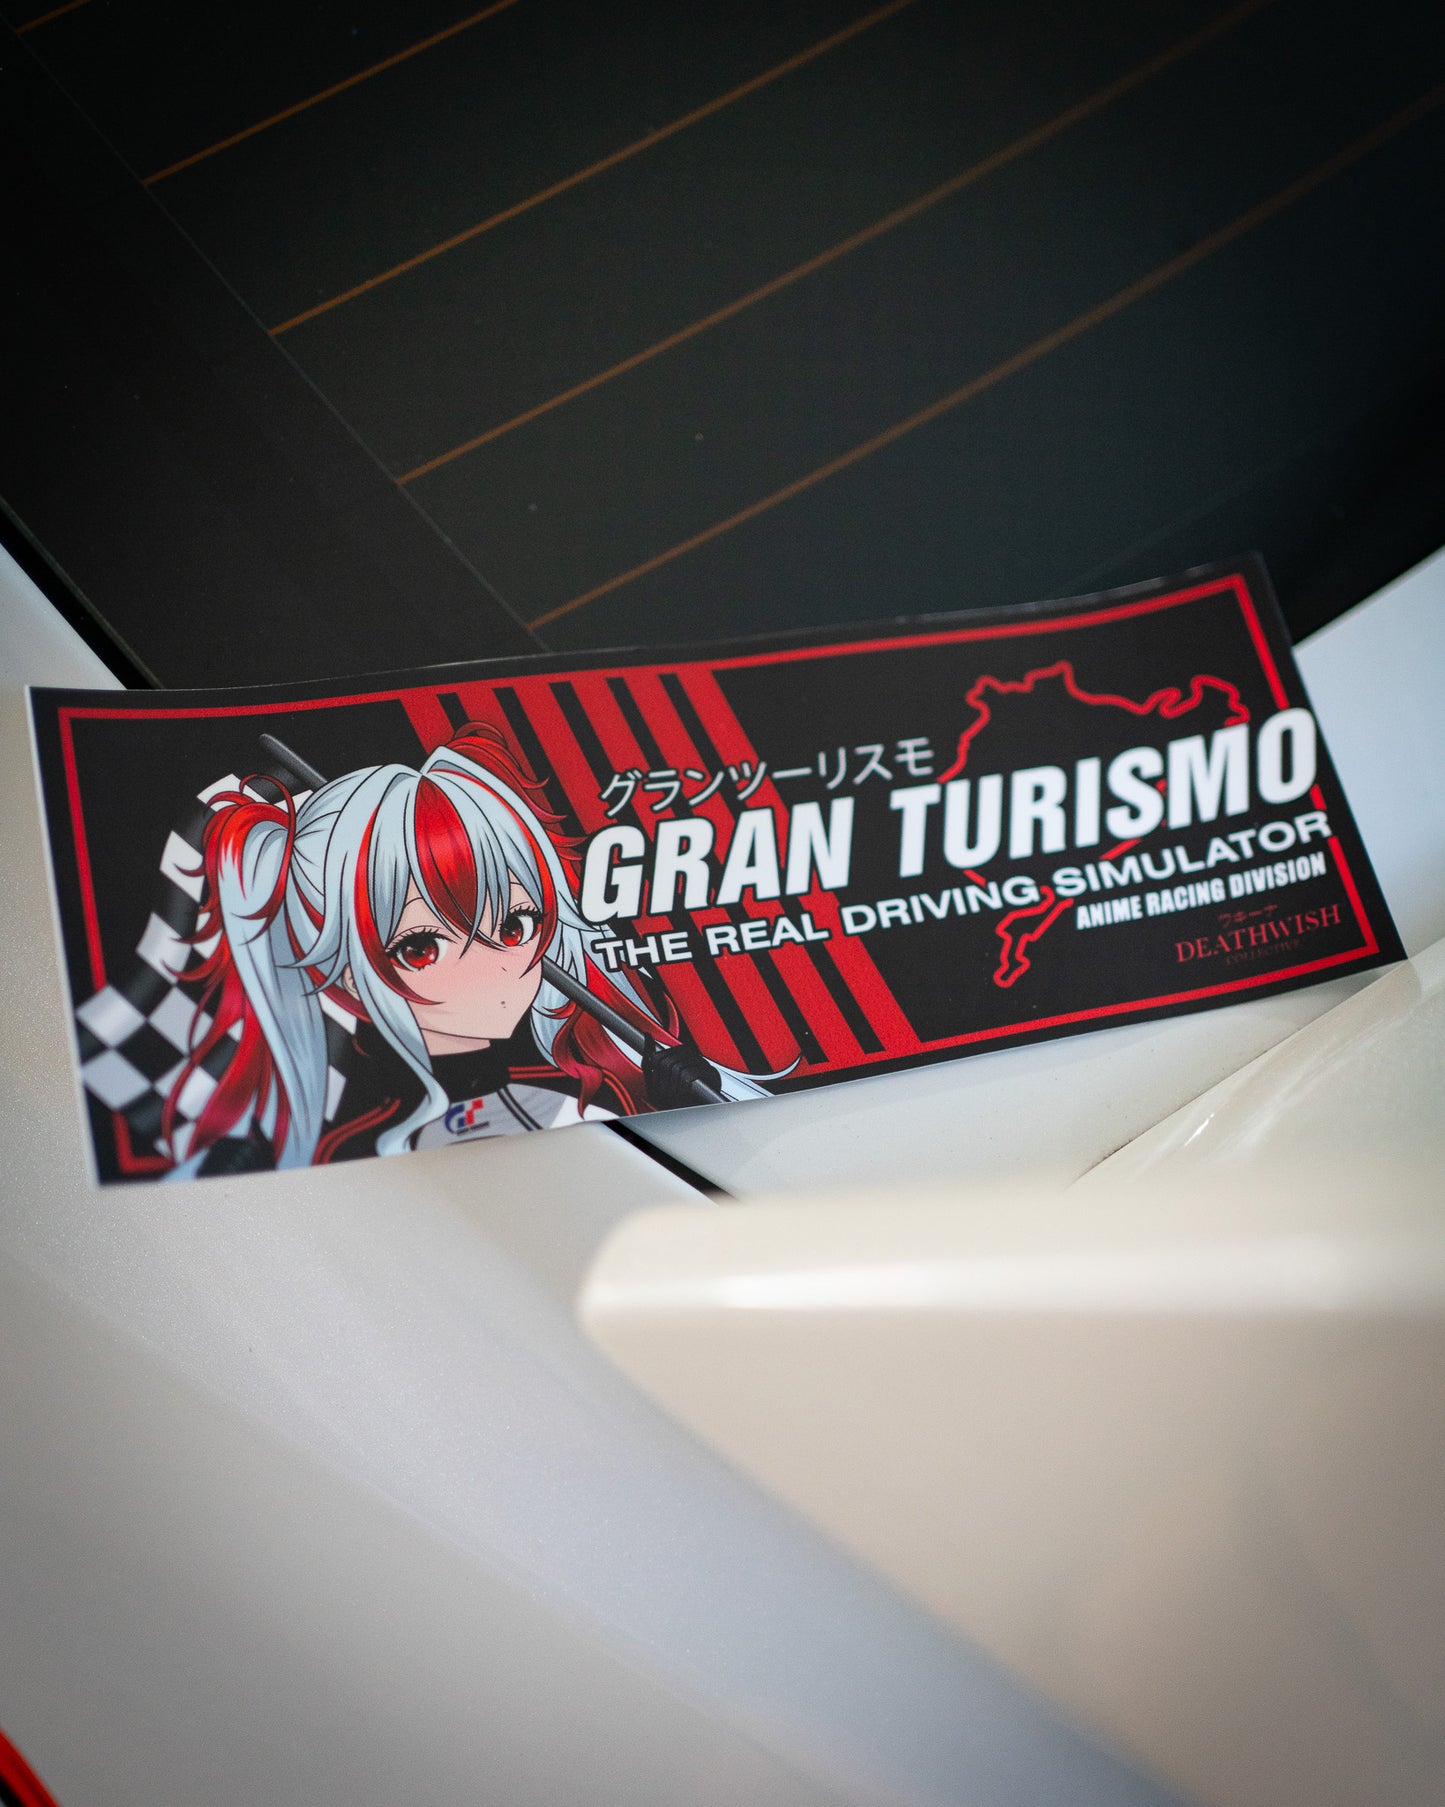 Gran Turismo "Anime Racing Division" Slap